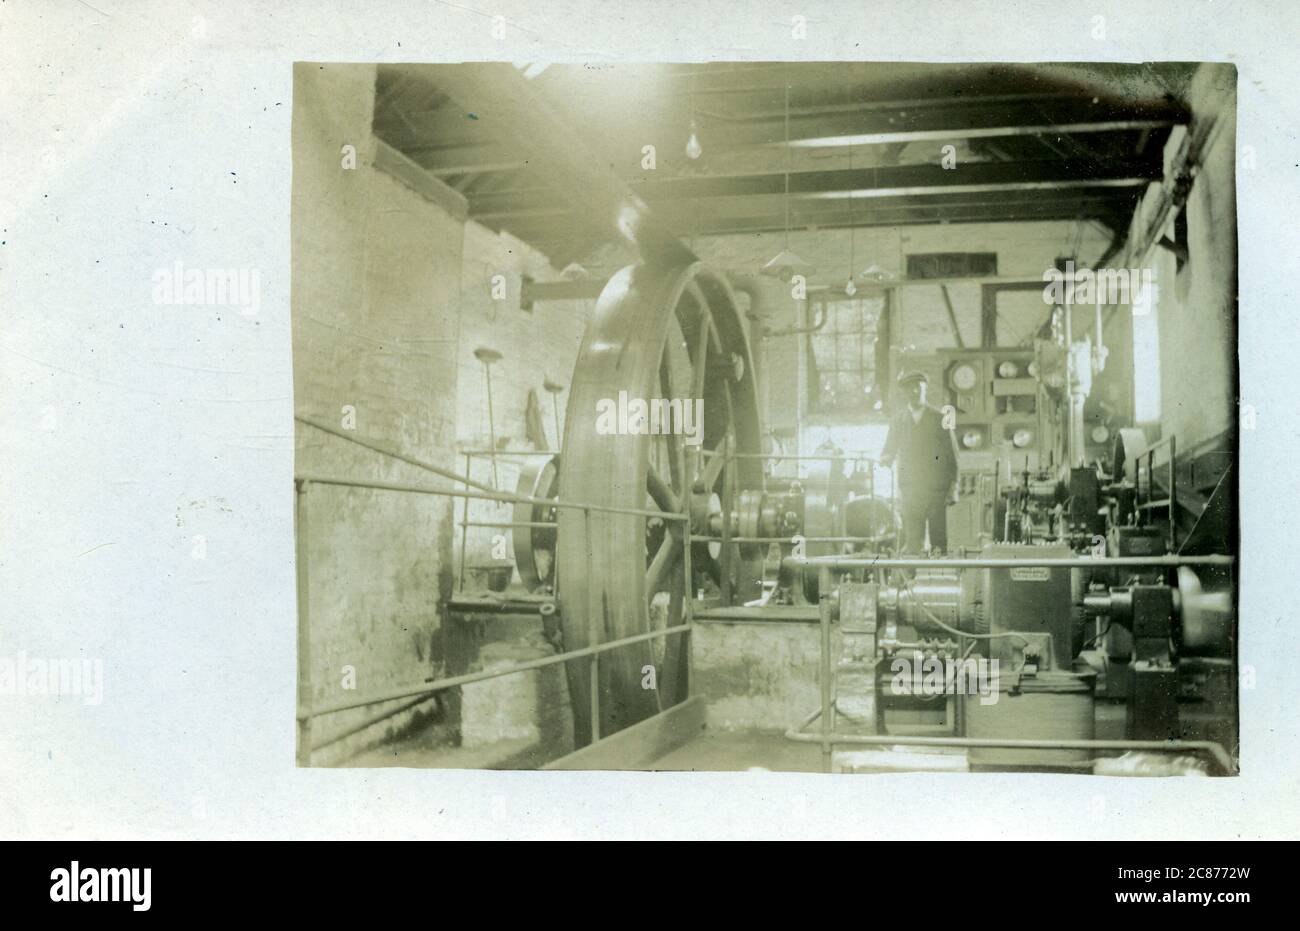 Moteur à vapeur industriel Edwardian Fly-Wheel Mill vers générateur électrique, salle de générateur, Angleterre. Banque D'Images